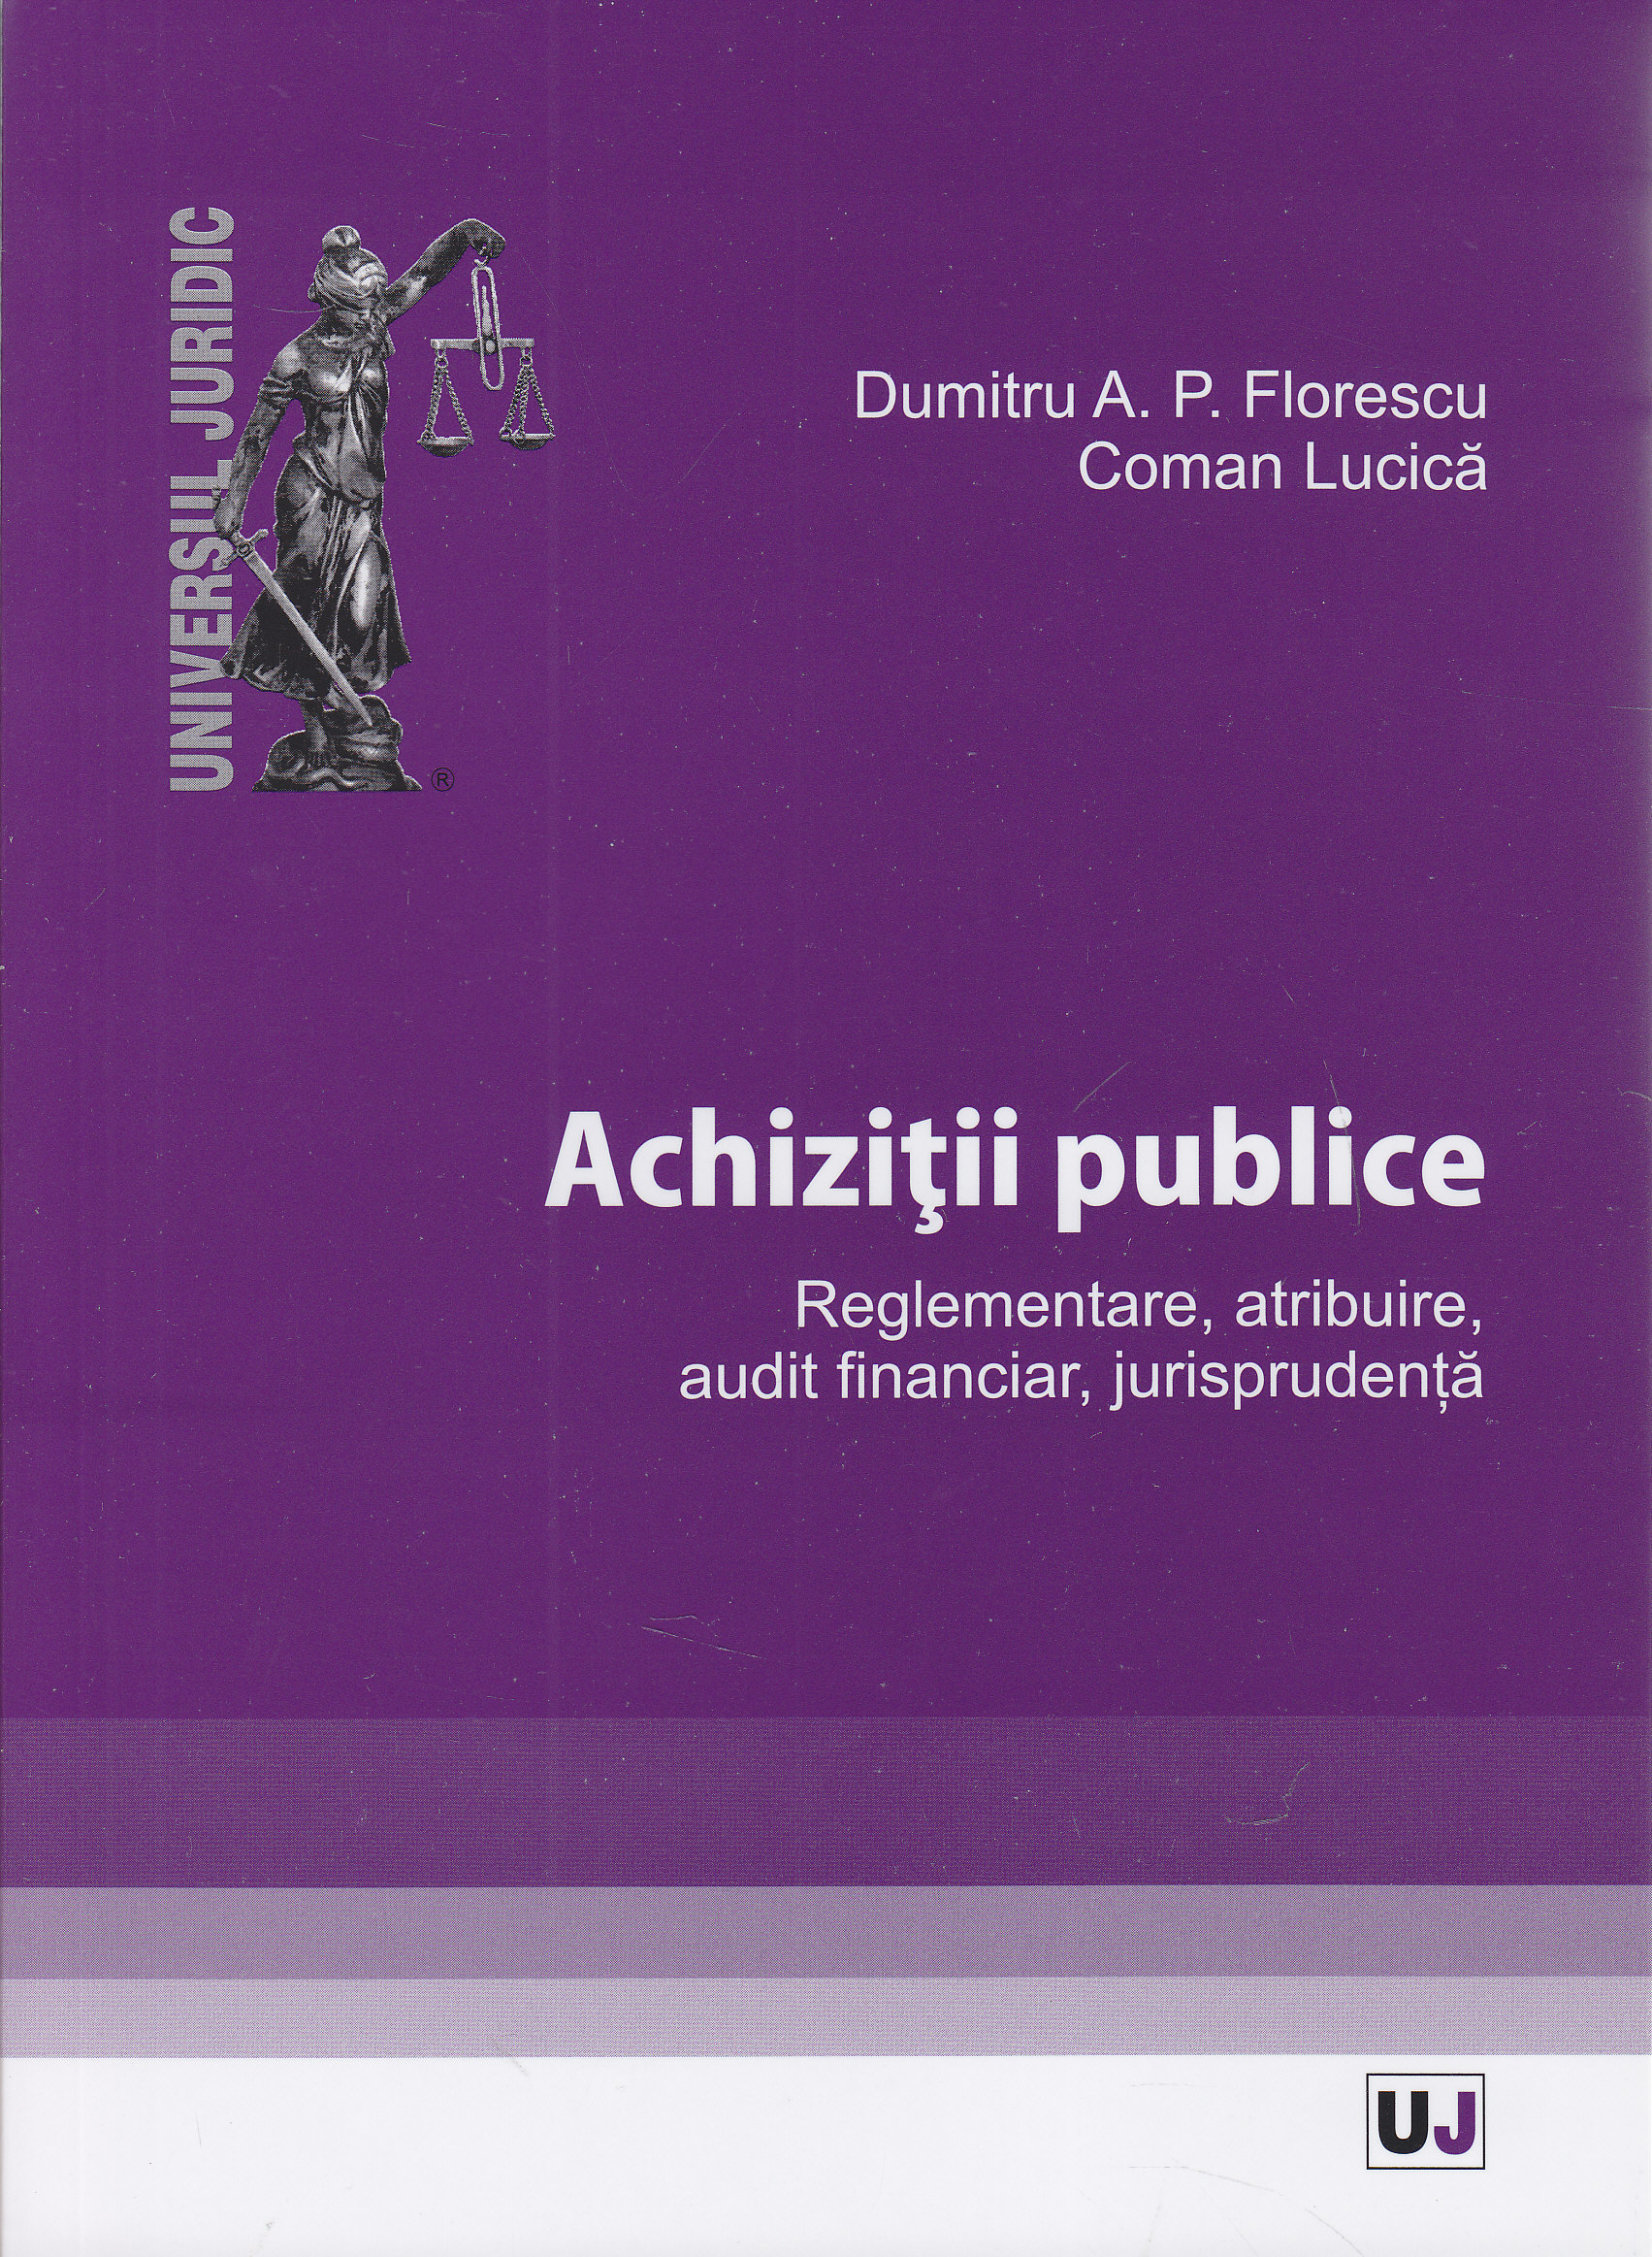 Achizitii publice - Dumitru A.P. Florescu, Coman Lucica